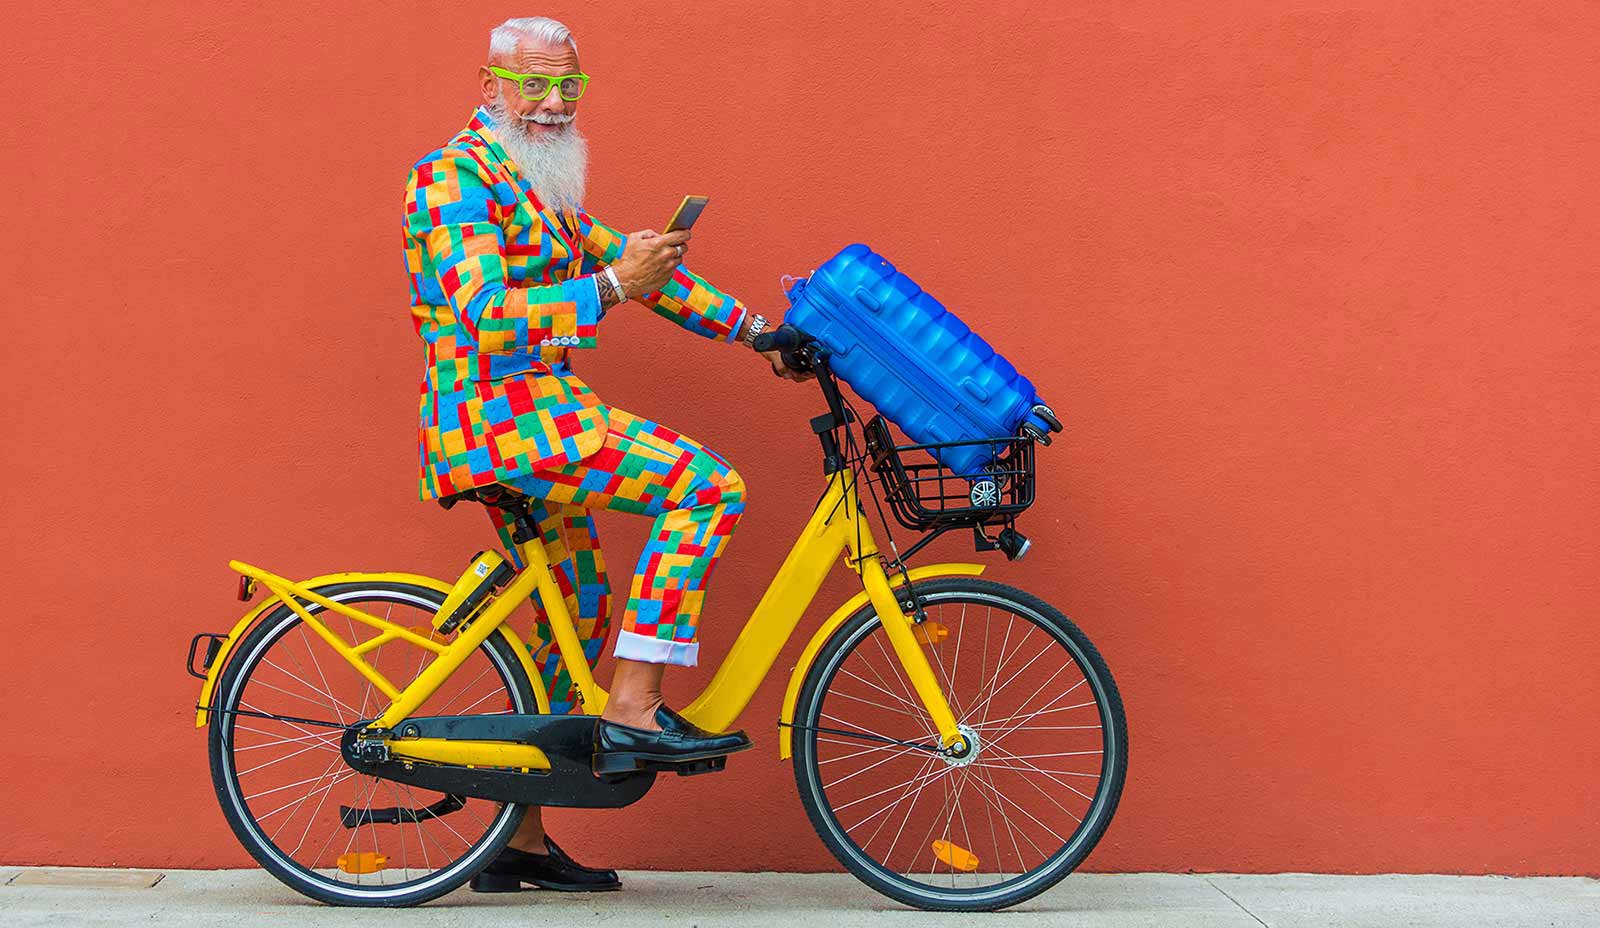 Mann på gul sykkel